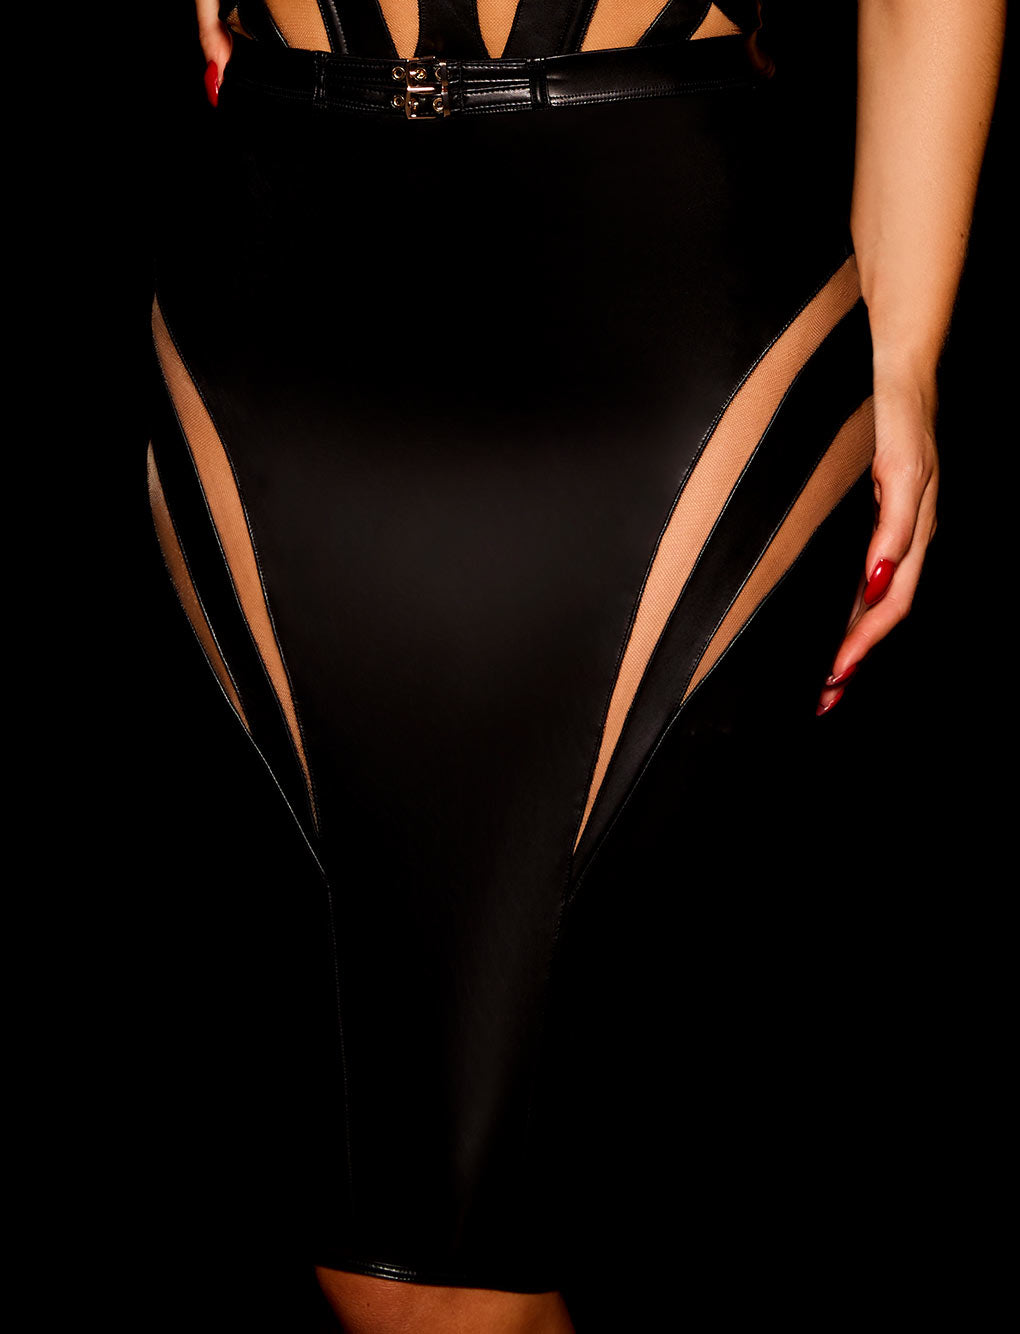 Davina Black Bustier & Skirt Lingerie Set